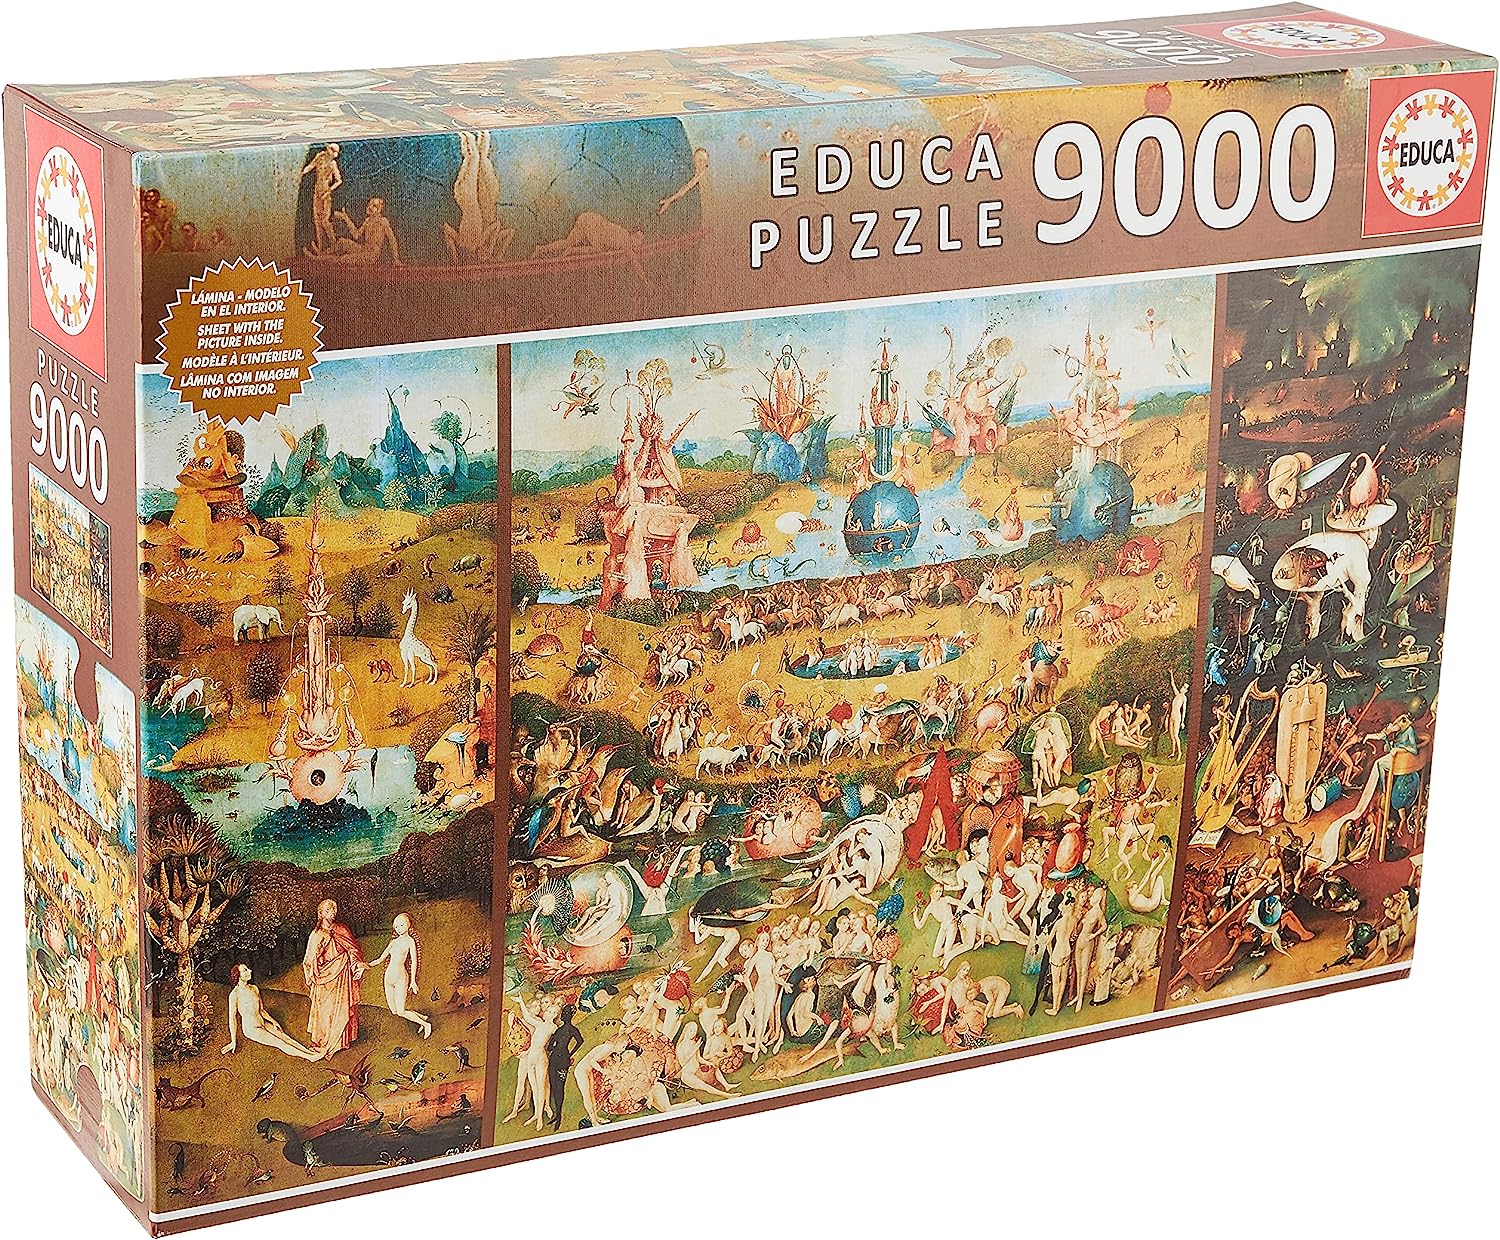 Bosch - A Gyönyörök Kertje 9000 darabos Educa puzzle kirakó (14831)